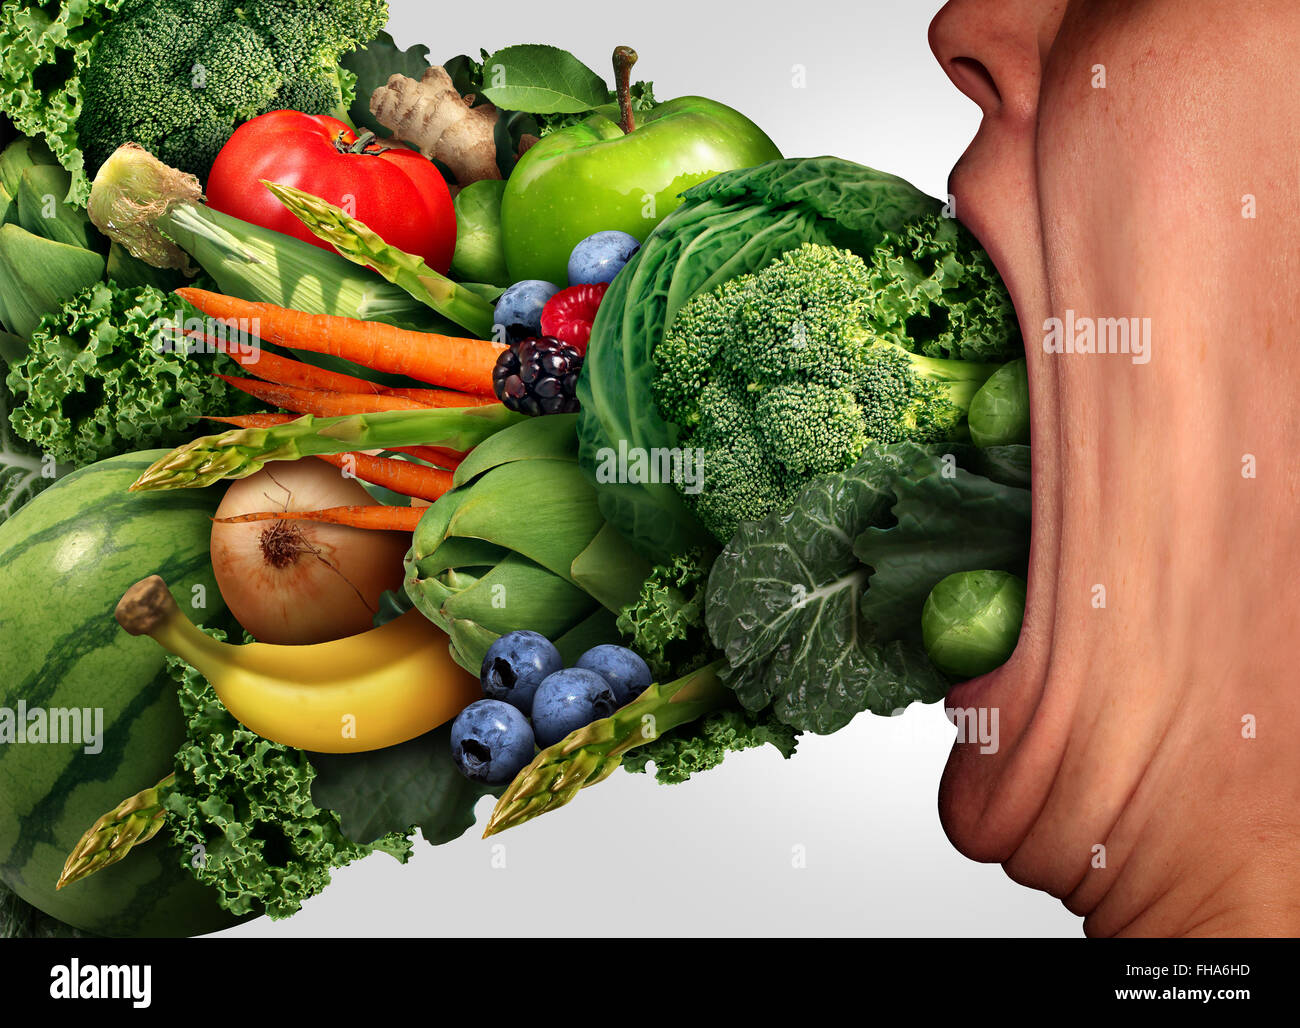 Essen Sie gesunde Ernährungskonzept als eine Person mit einem weiten, offenen gestreckt Mund essen frisches Obst und Gemüse als Gesundheits- und Fitness Lifestyle-Symbol. Stockfoto